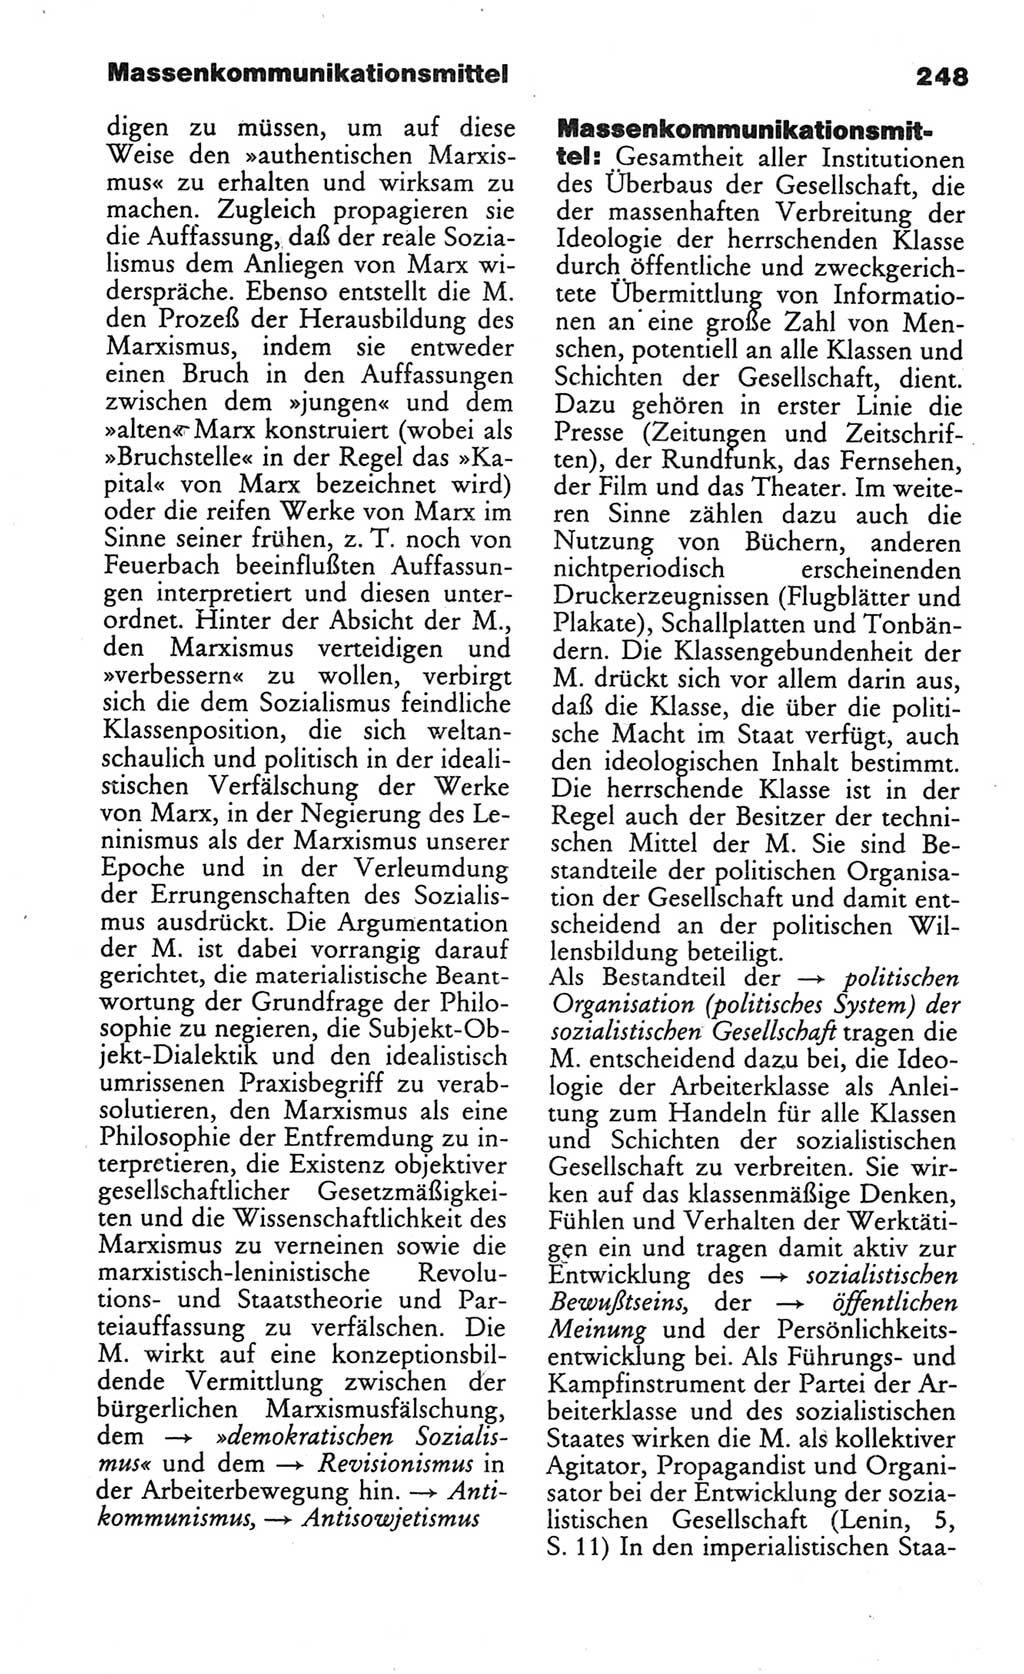 Wörterbuch des wissenschaftlichen Kommunismus [Deutsche Demokratische Republik (DDR)] 1984, Seite 248 (Wb. wiss. Komm. DDR 1984, S. 248)